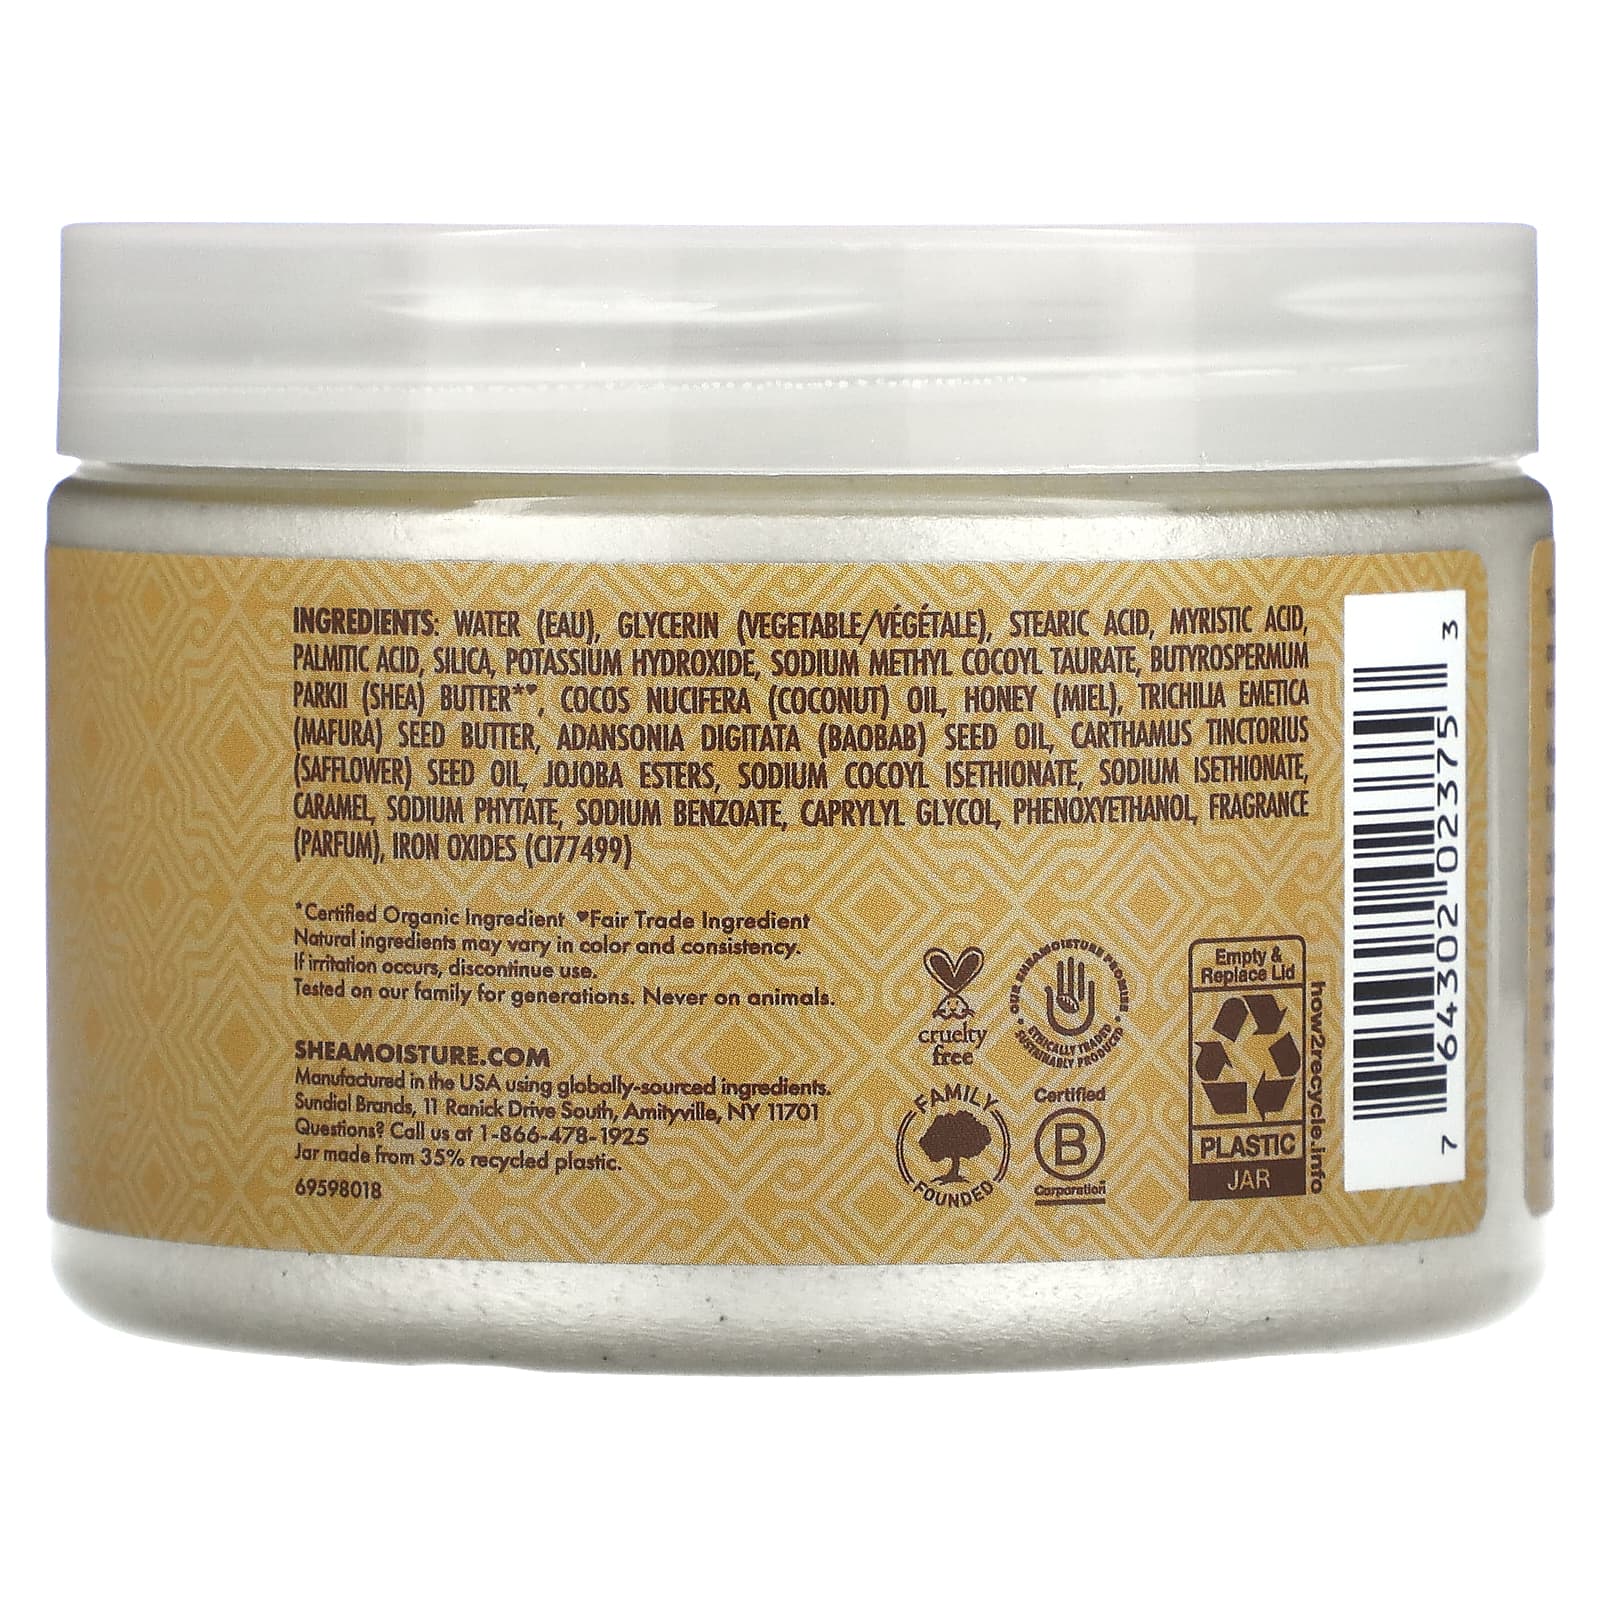 SheaMoisture, Manuka Honey, Smoothing Creme Body Scrub, 11.3 oz (320 g)